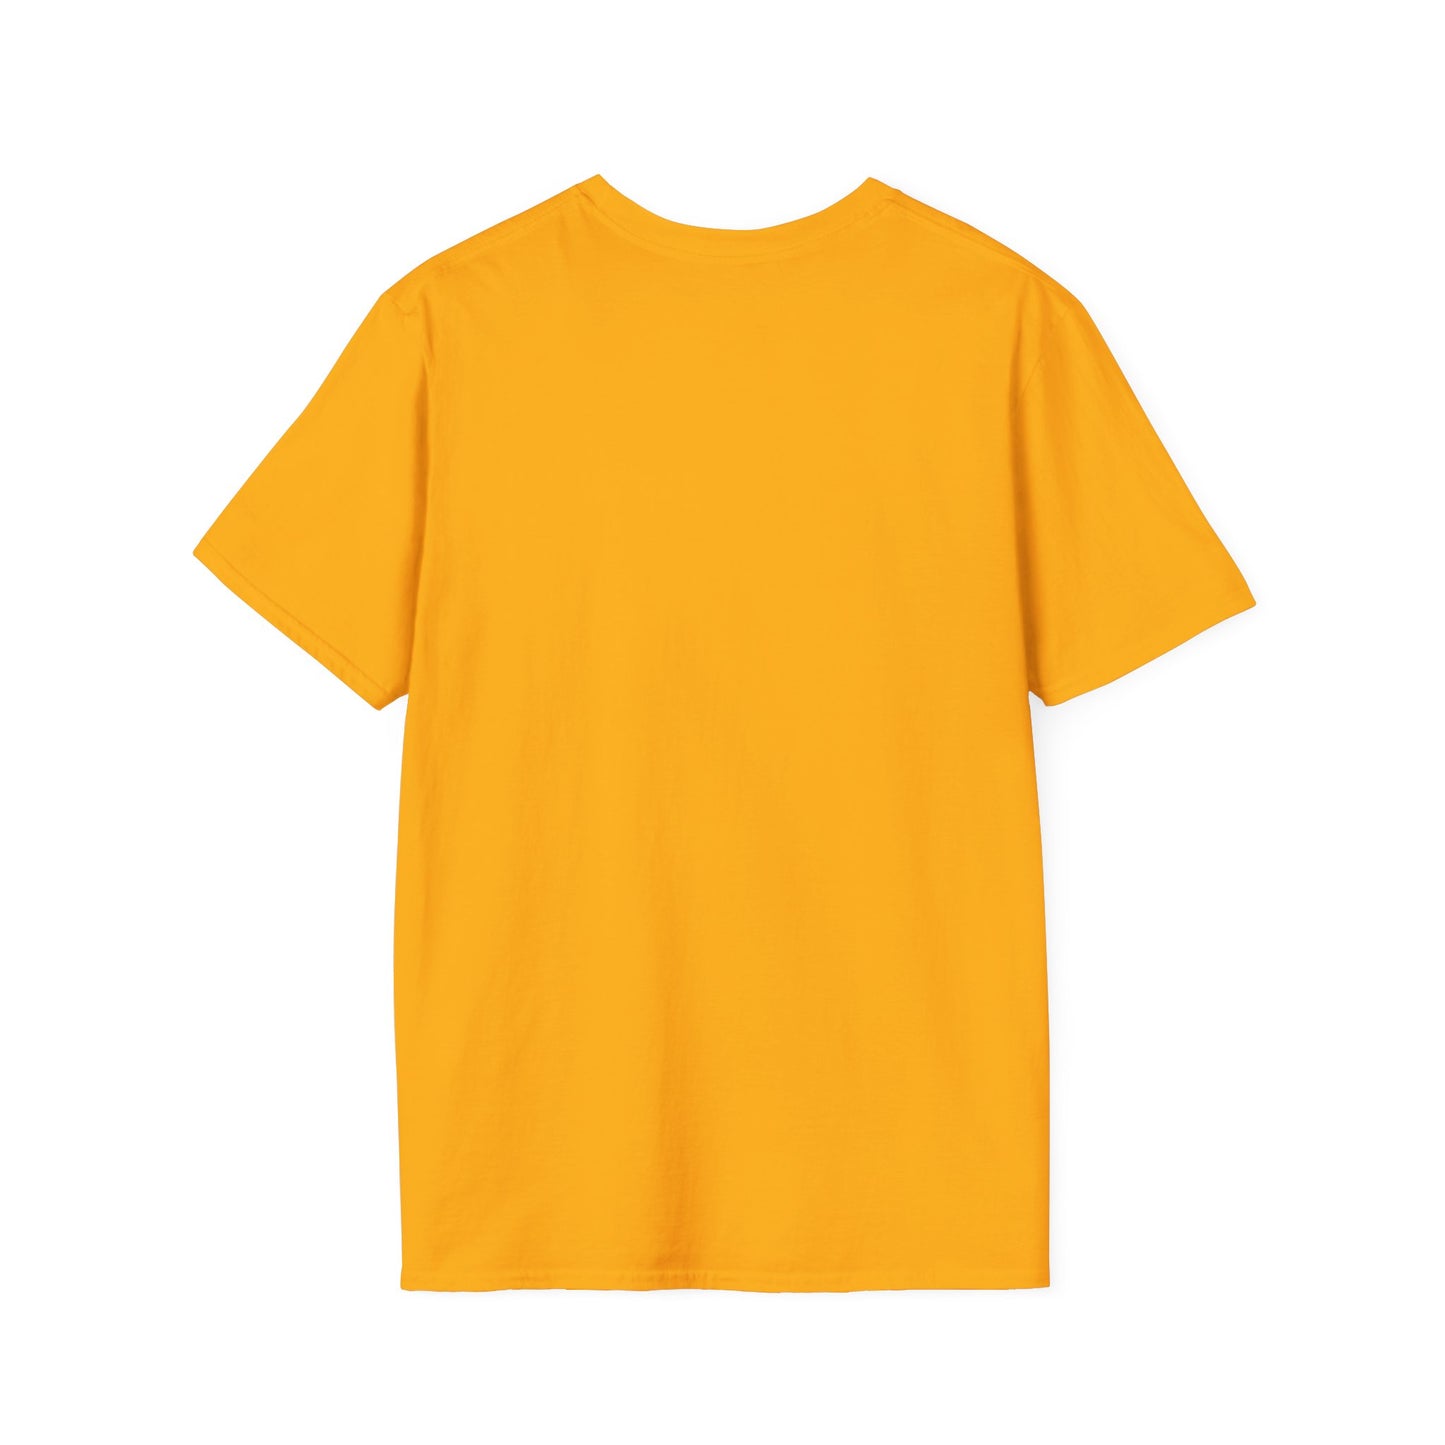 Unisex design (Self Care) T-Shirt